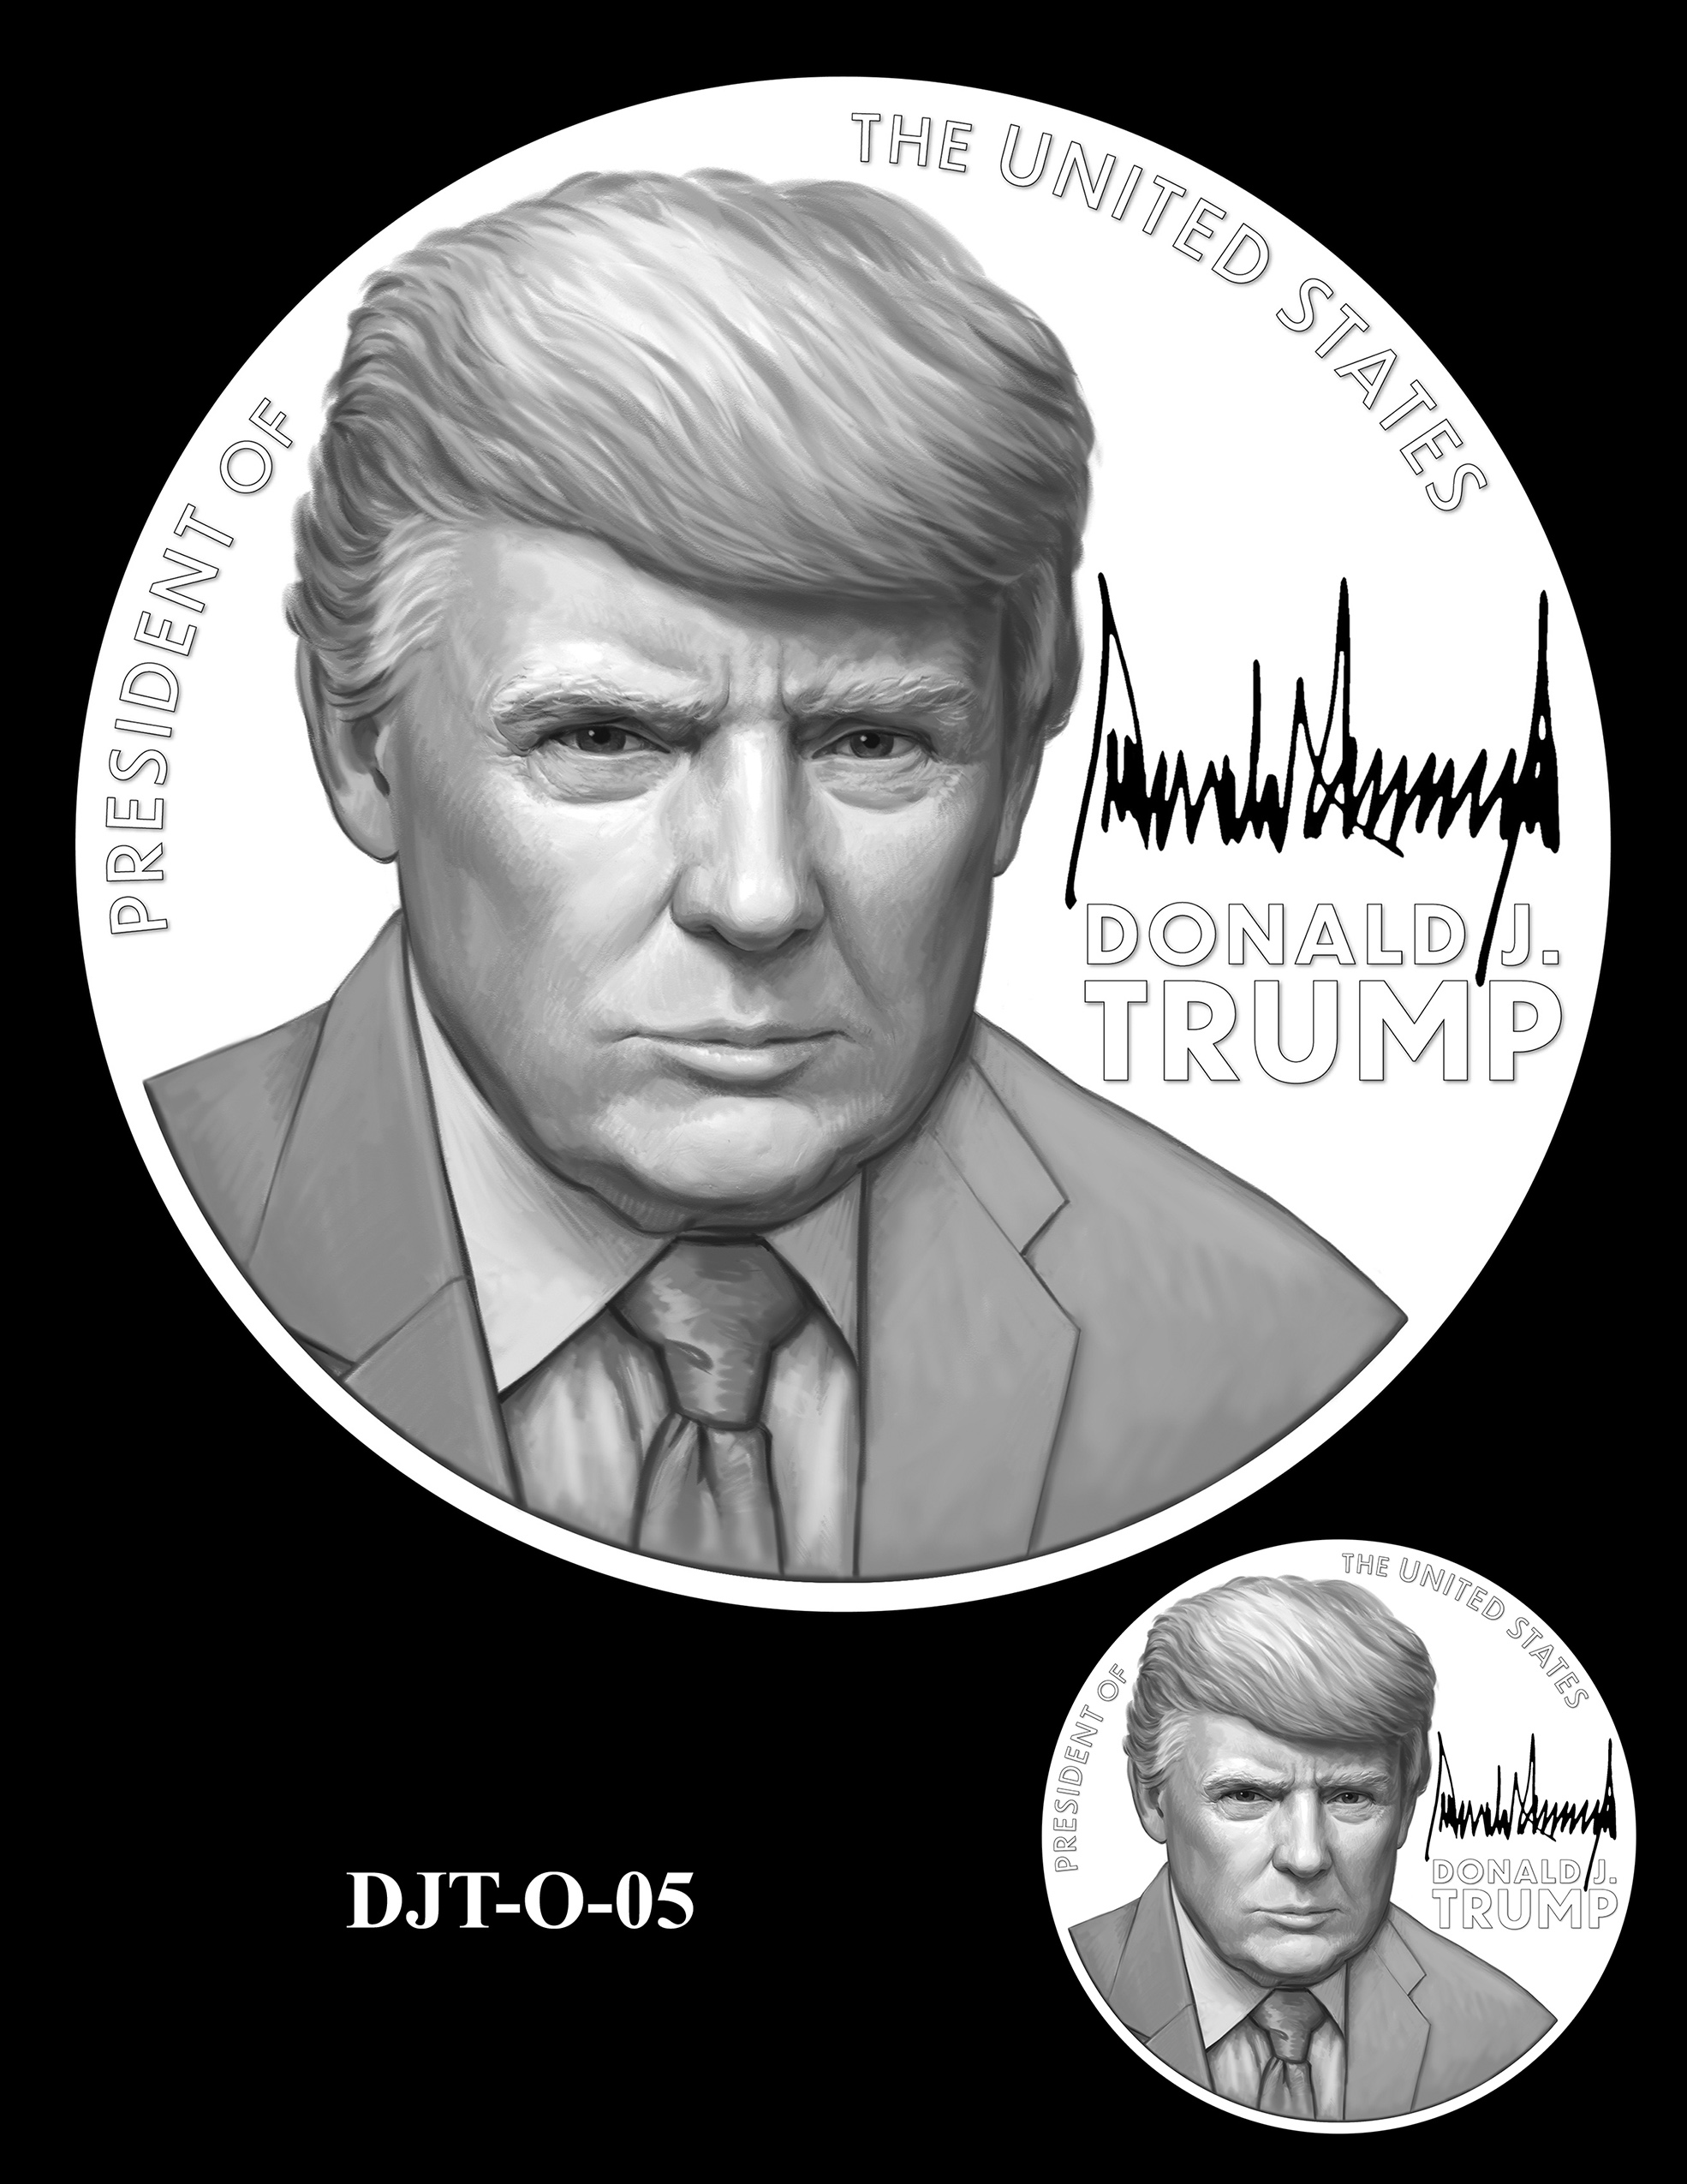 DJT-O-05 -- Donald J. Trump Presidential Medal